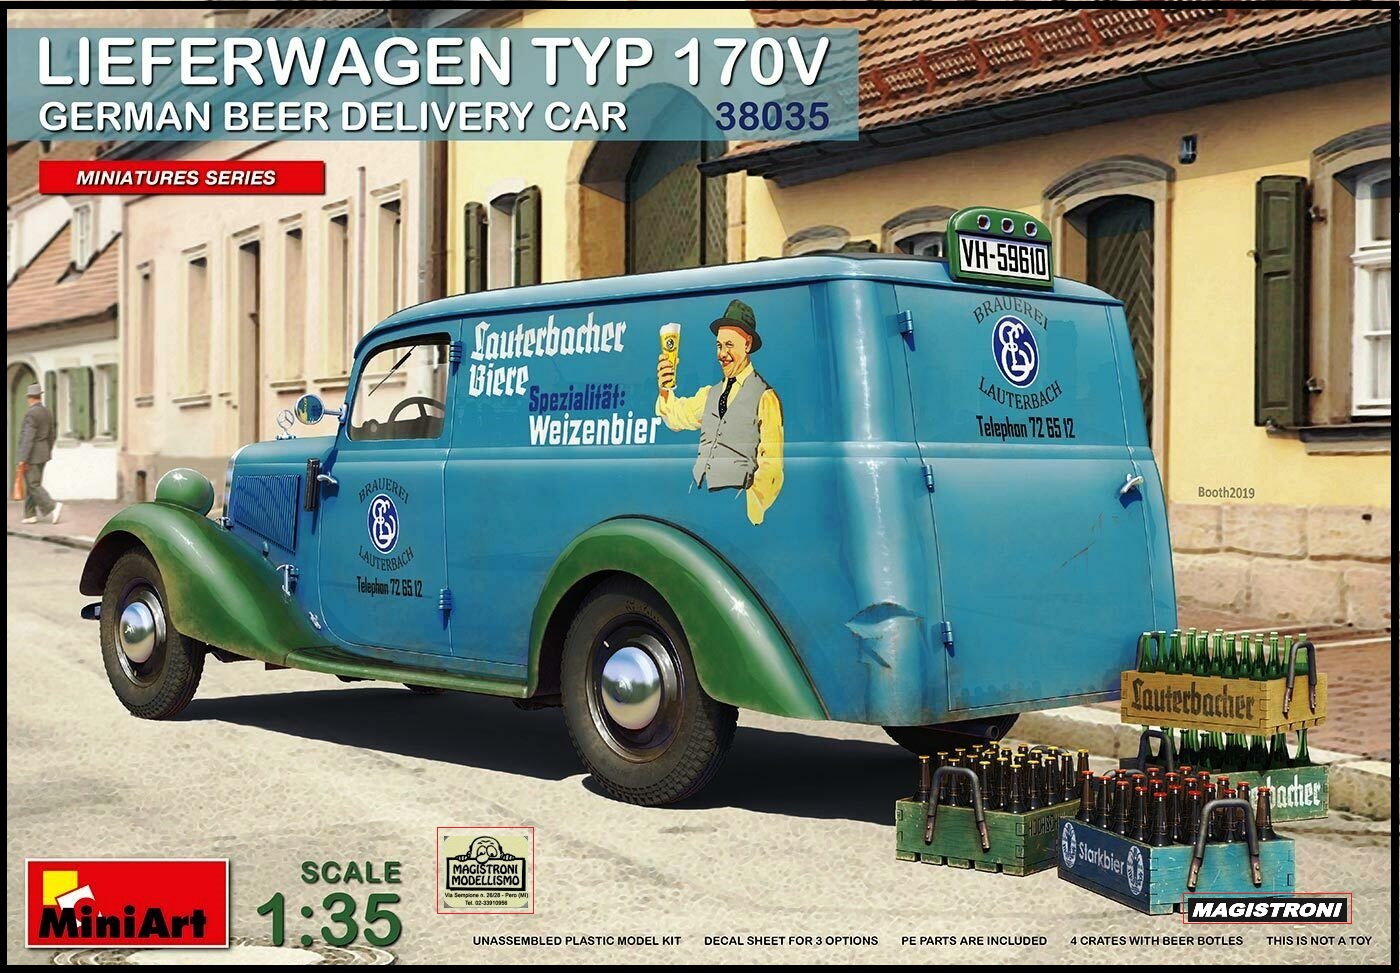 LIEFERWAGEN TYP 170V German Beer Delivery Car